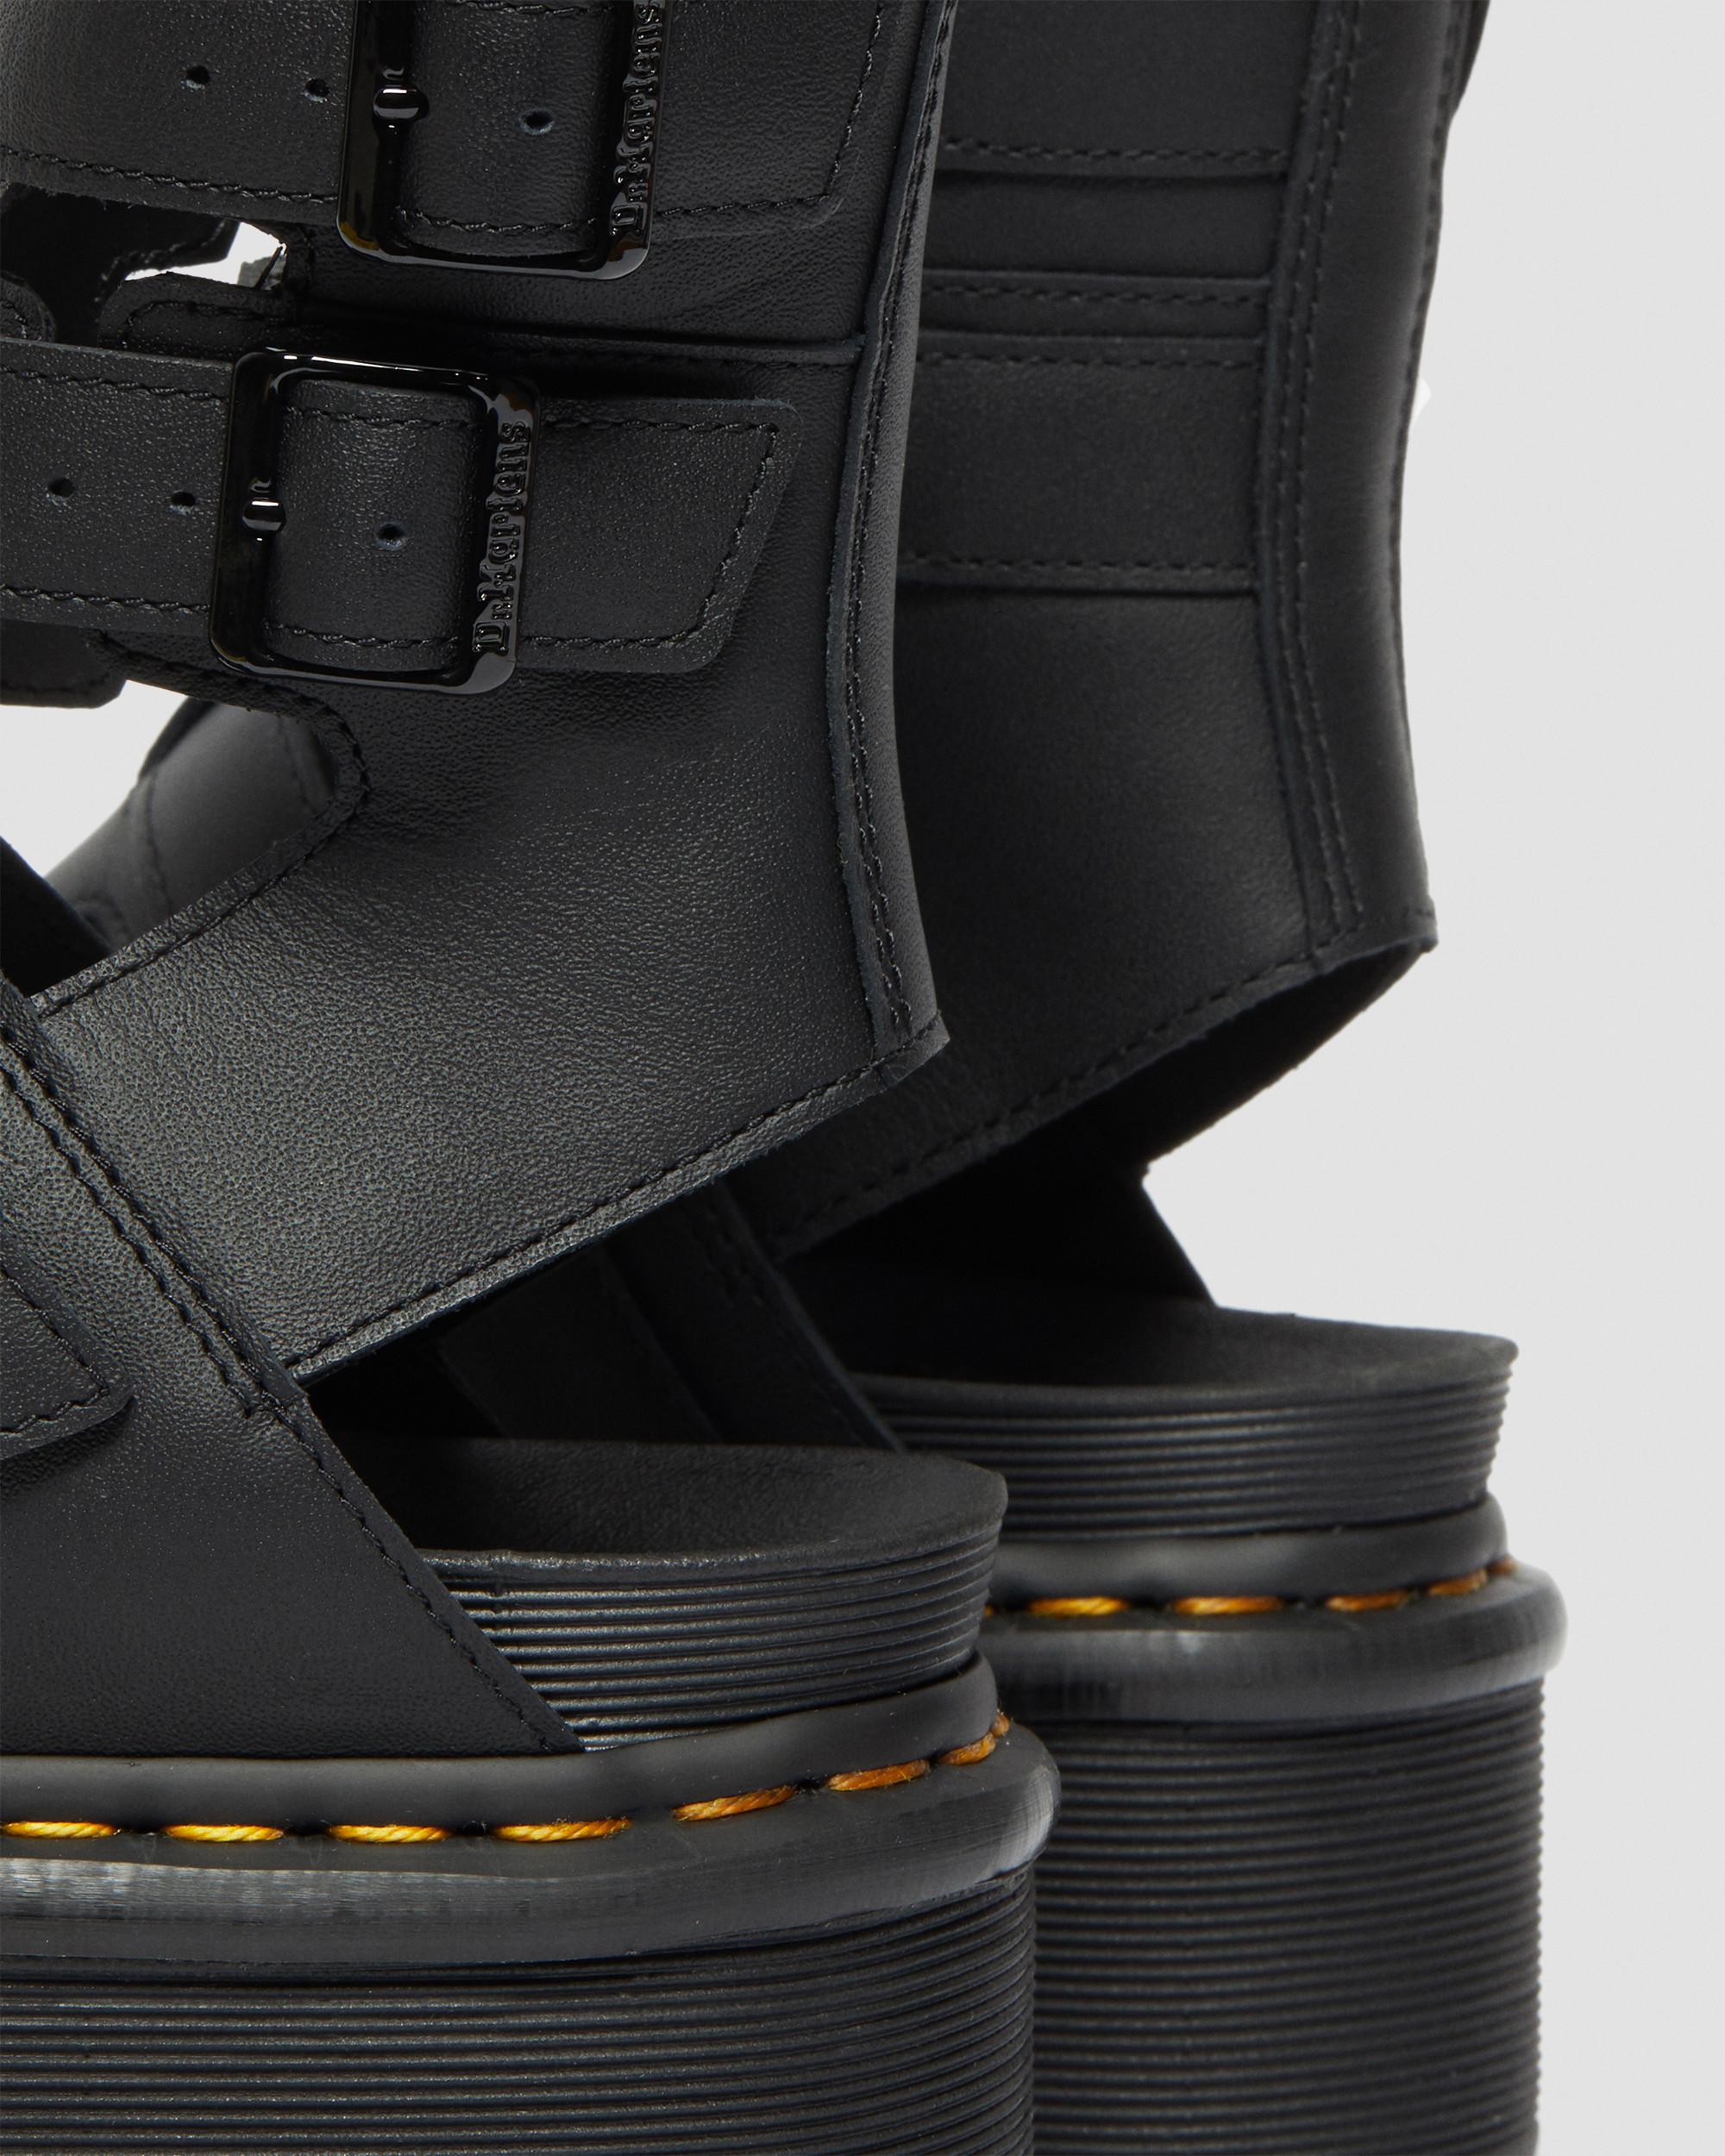 Giavanna Leather Platform Gladiator Sandals in Black | Dr. Martens